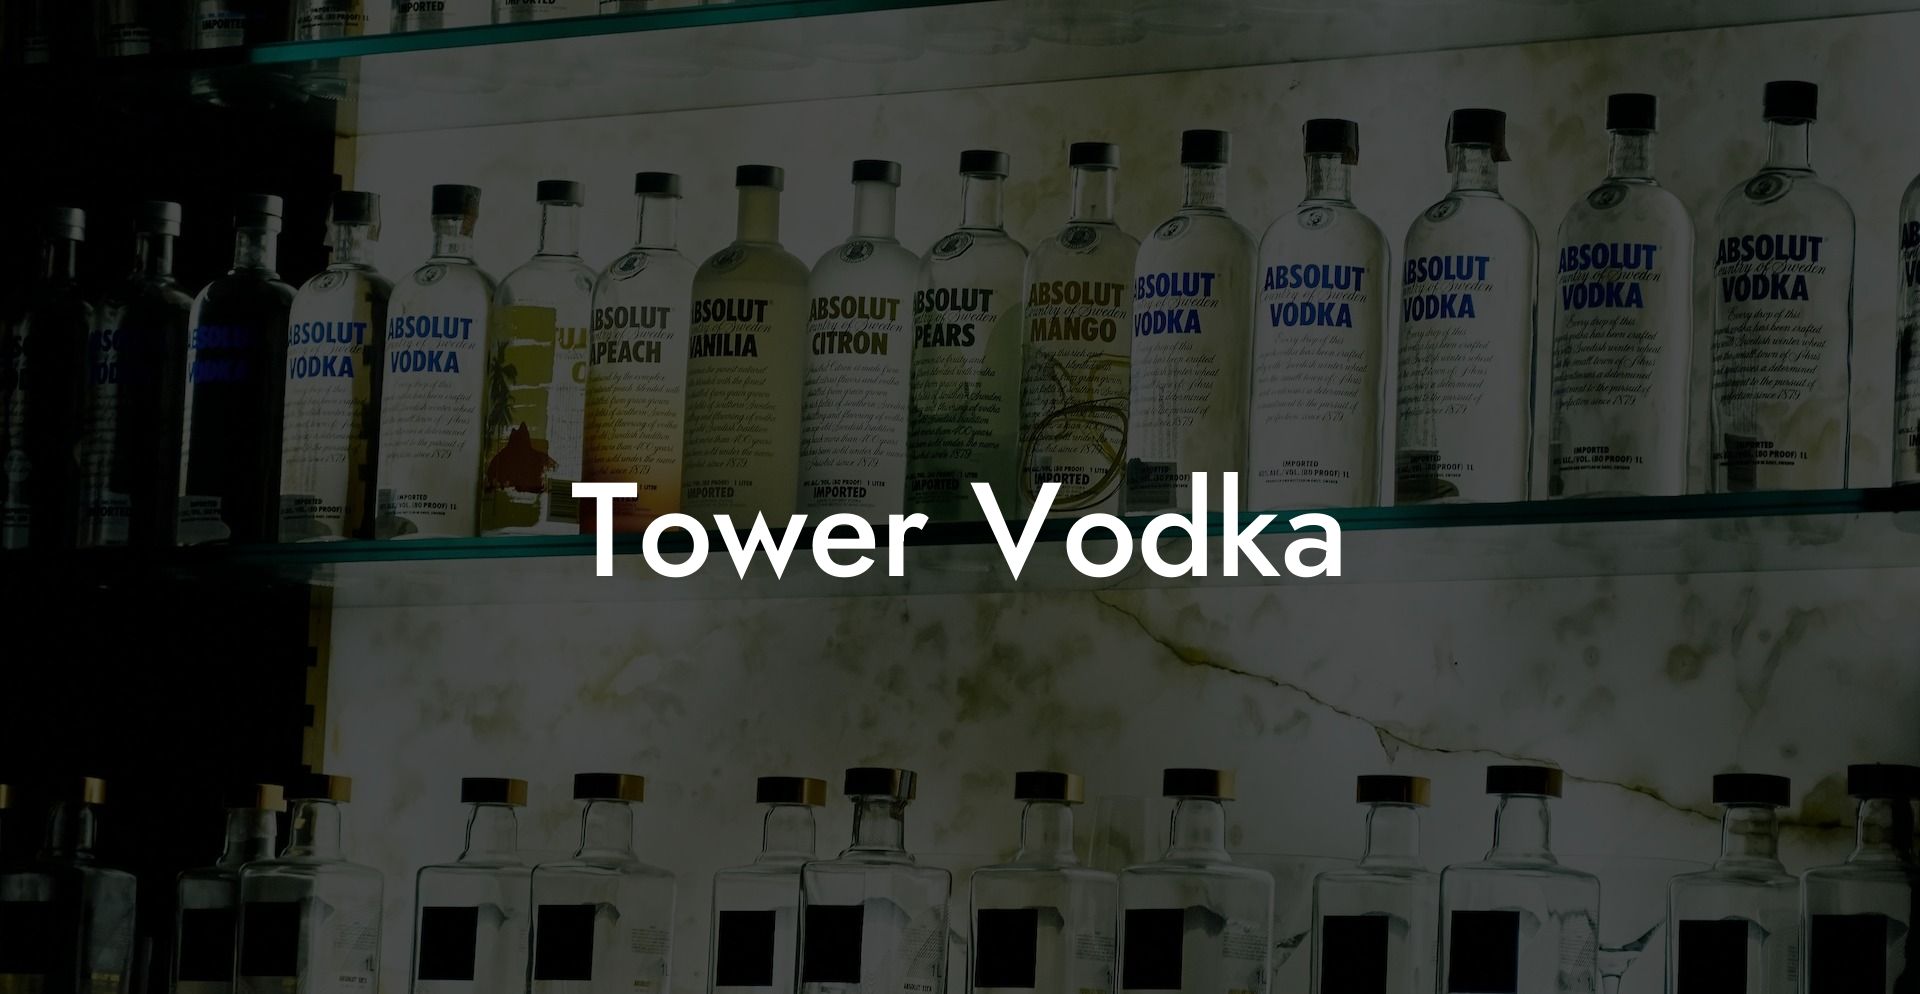 Tower Vodka